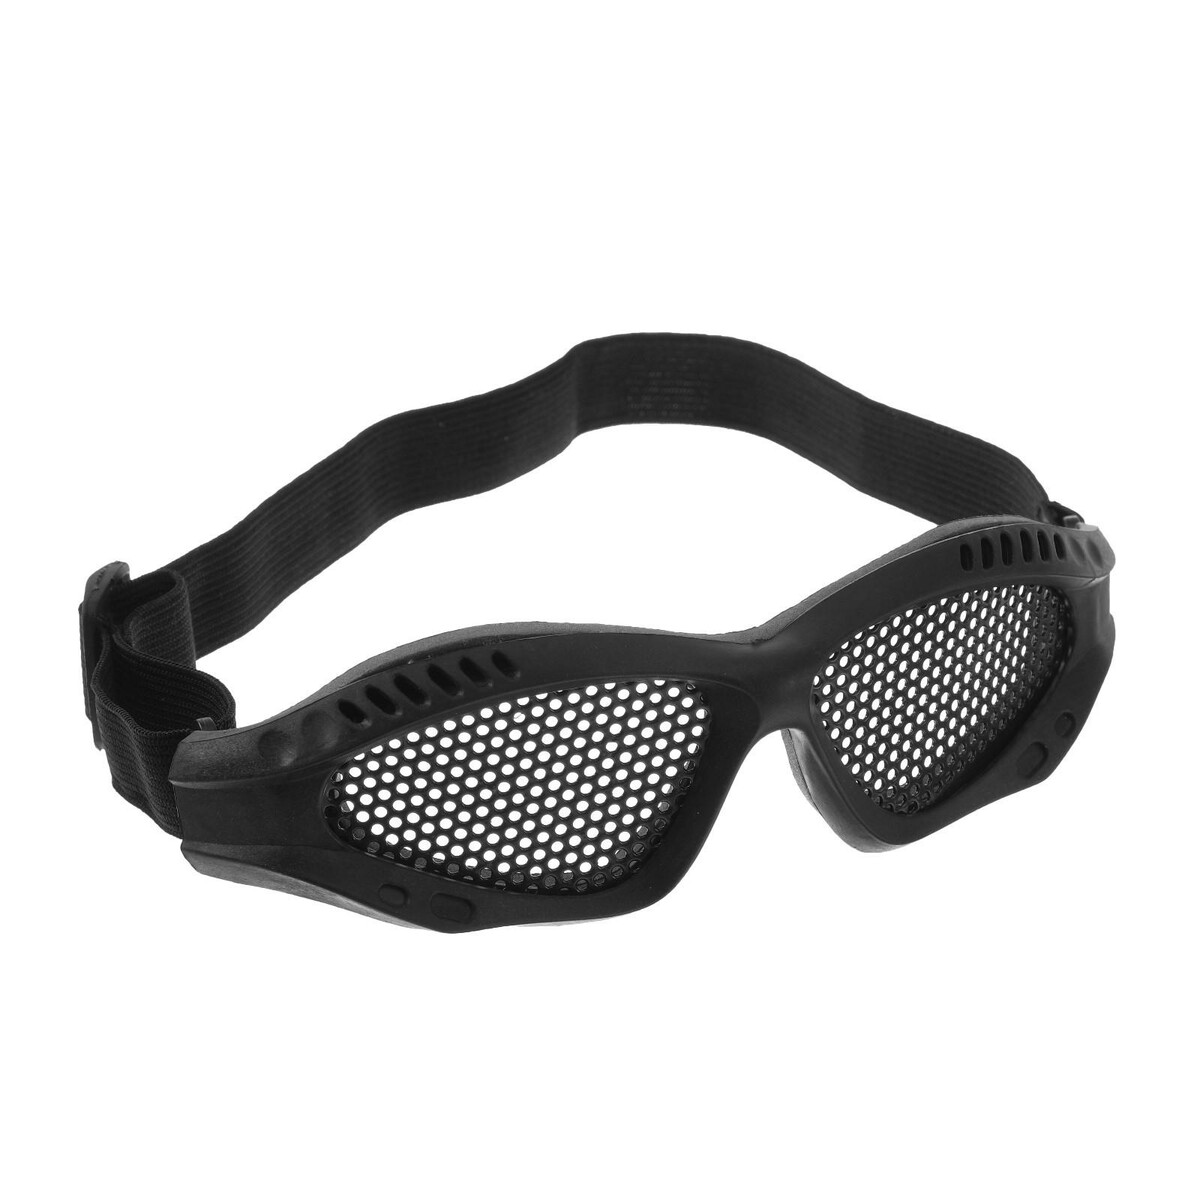 Очки для езды на мототехнике, грязезащита, армированные, цвет черный пасхальная агада в другом измерении стерео очки